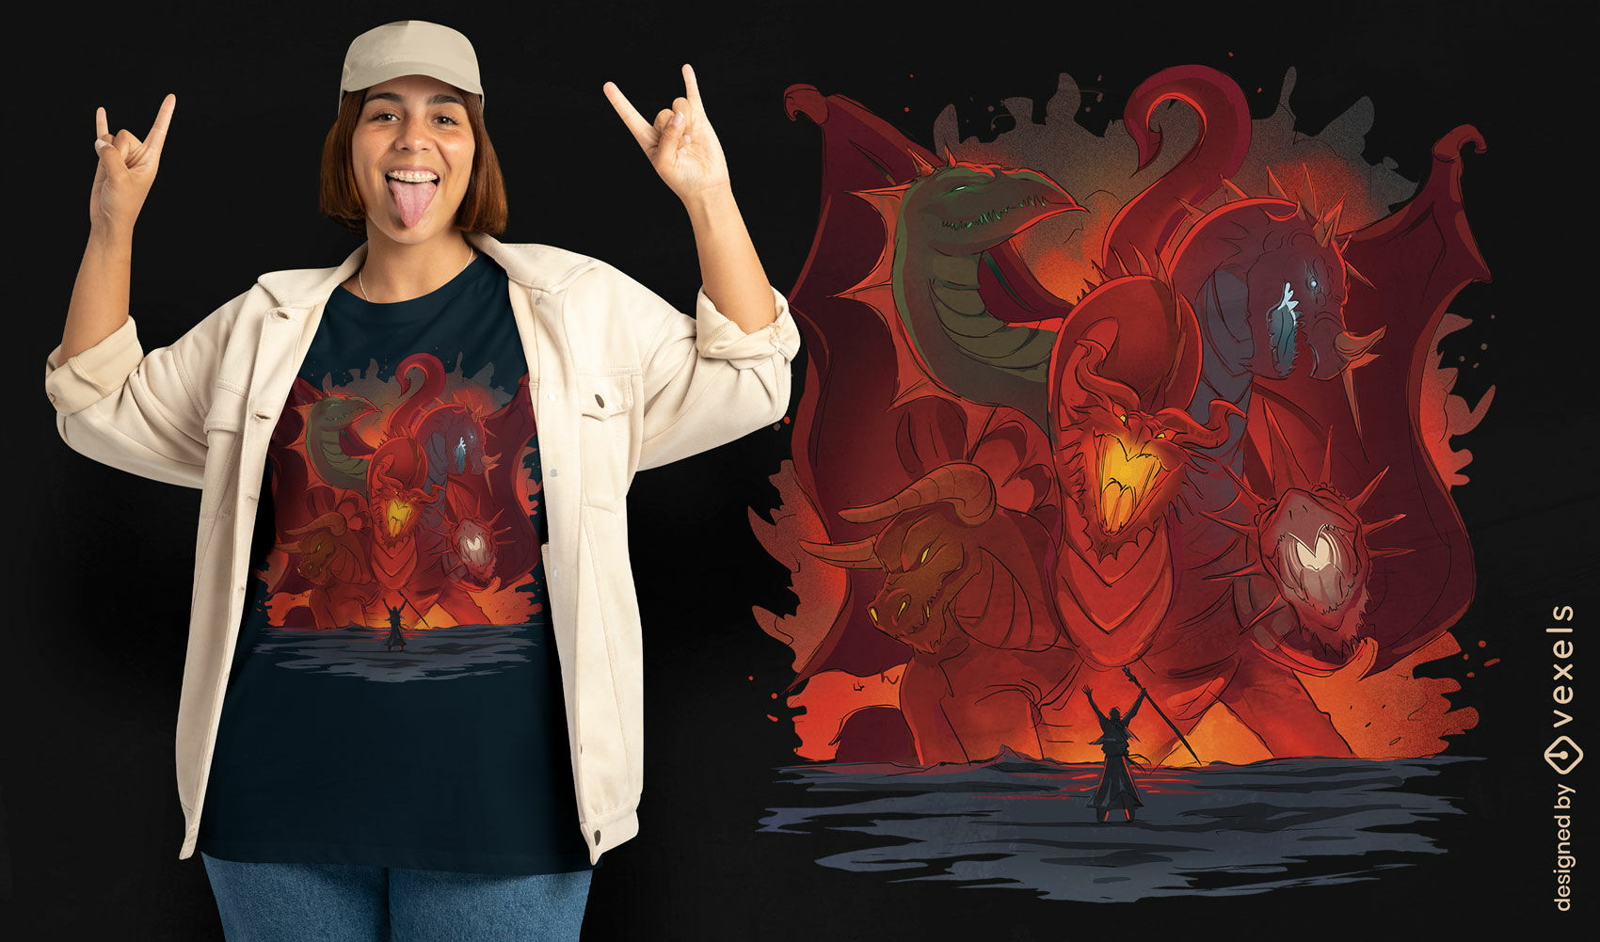 Diseño de camiseta de fantasía de dragón de cinco cabezas.